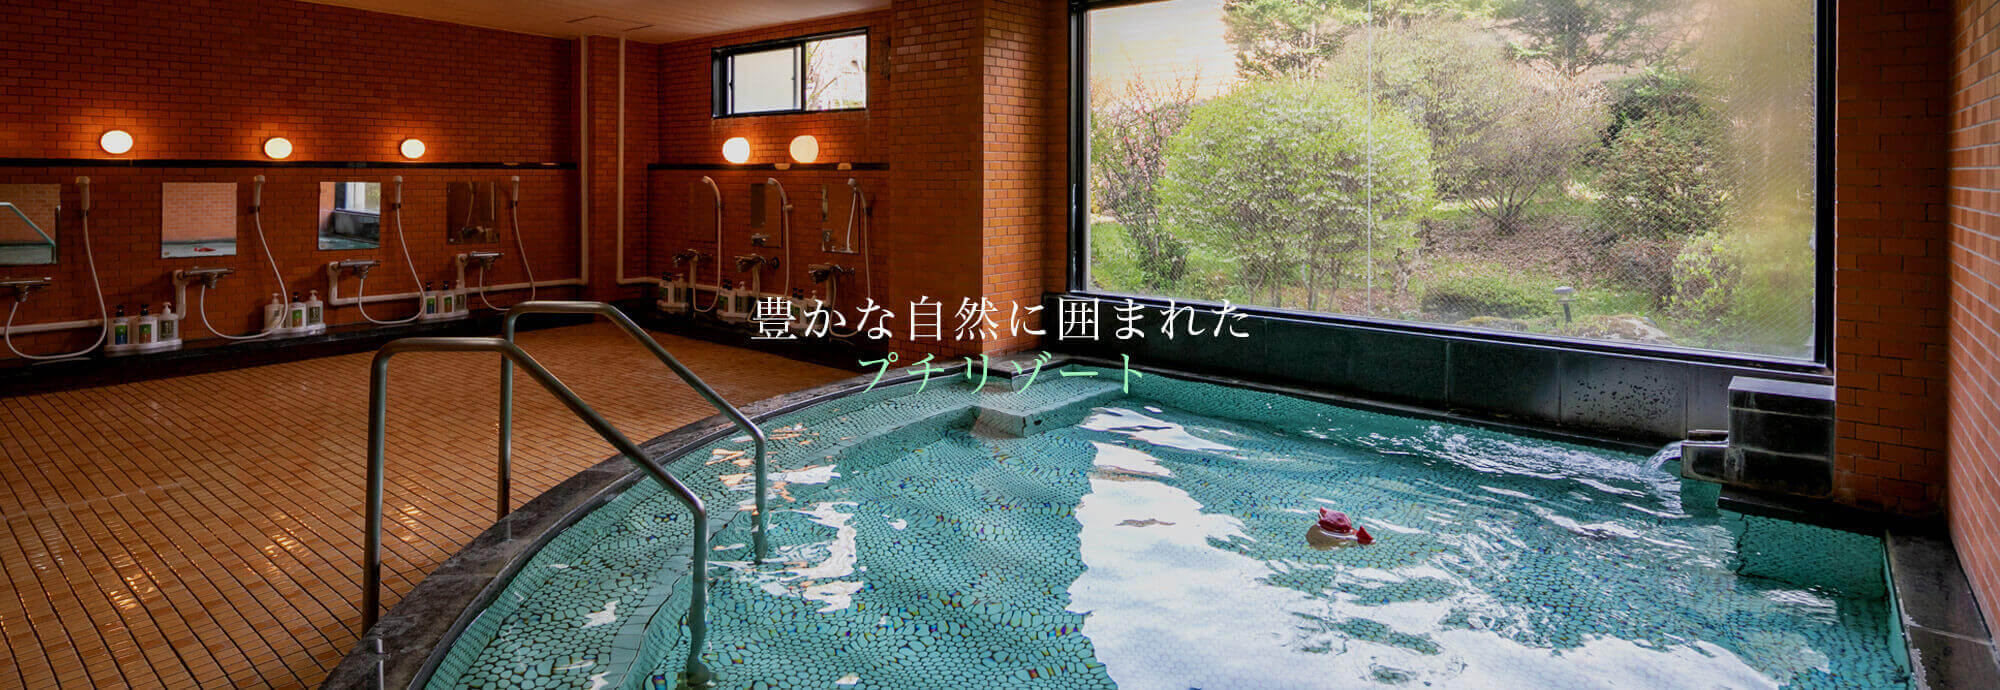 長野 木曽駒高原 YOSHINAKA 森のホテル